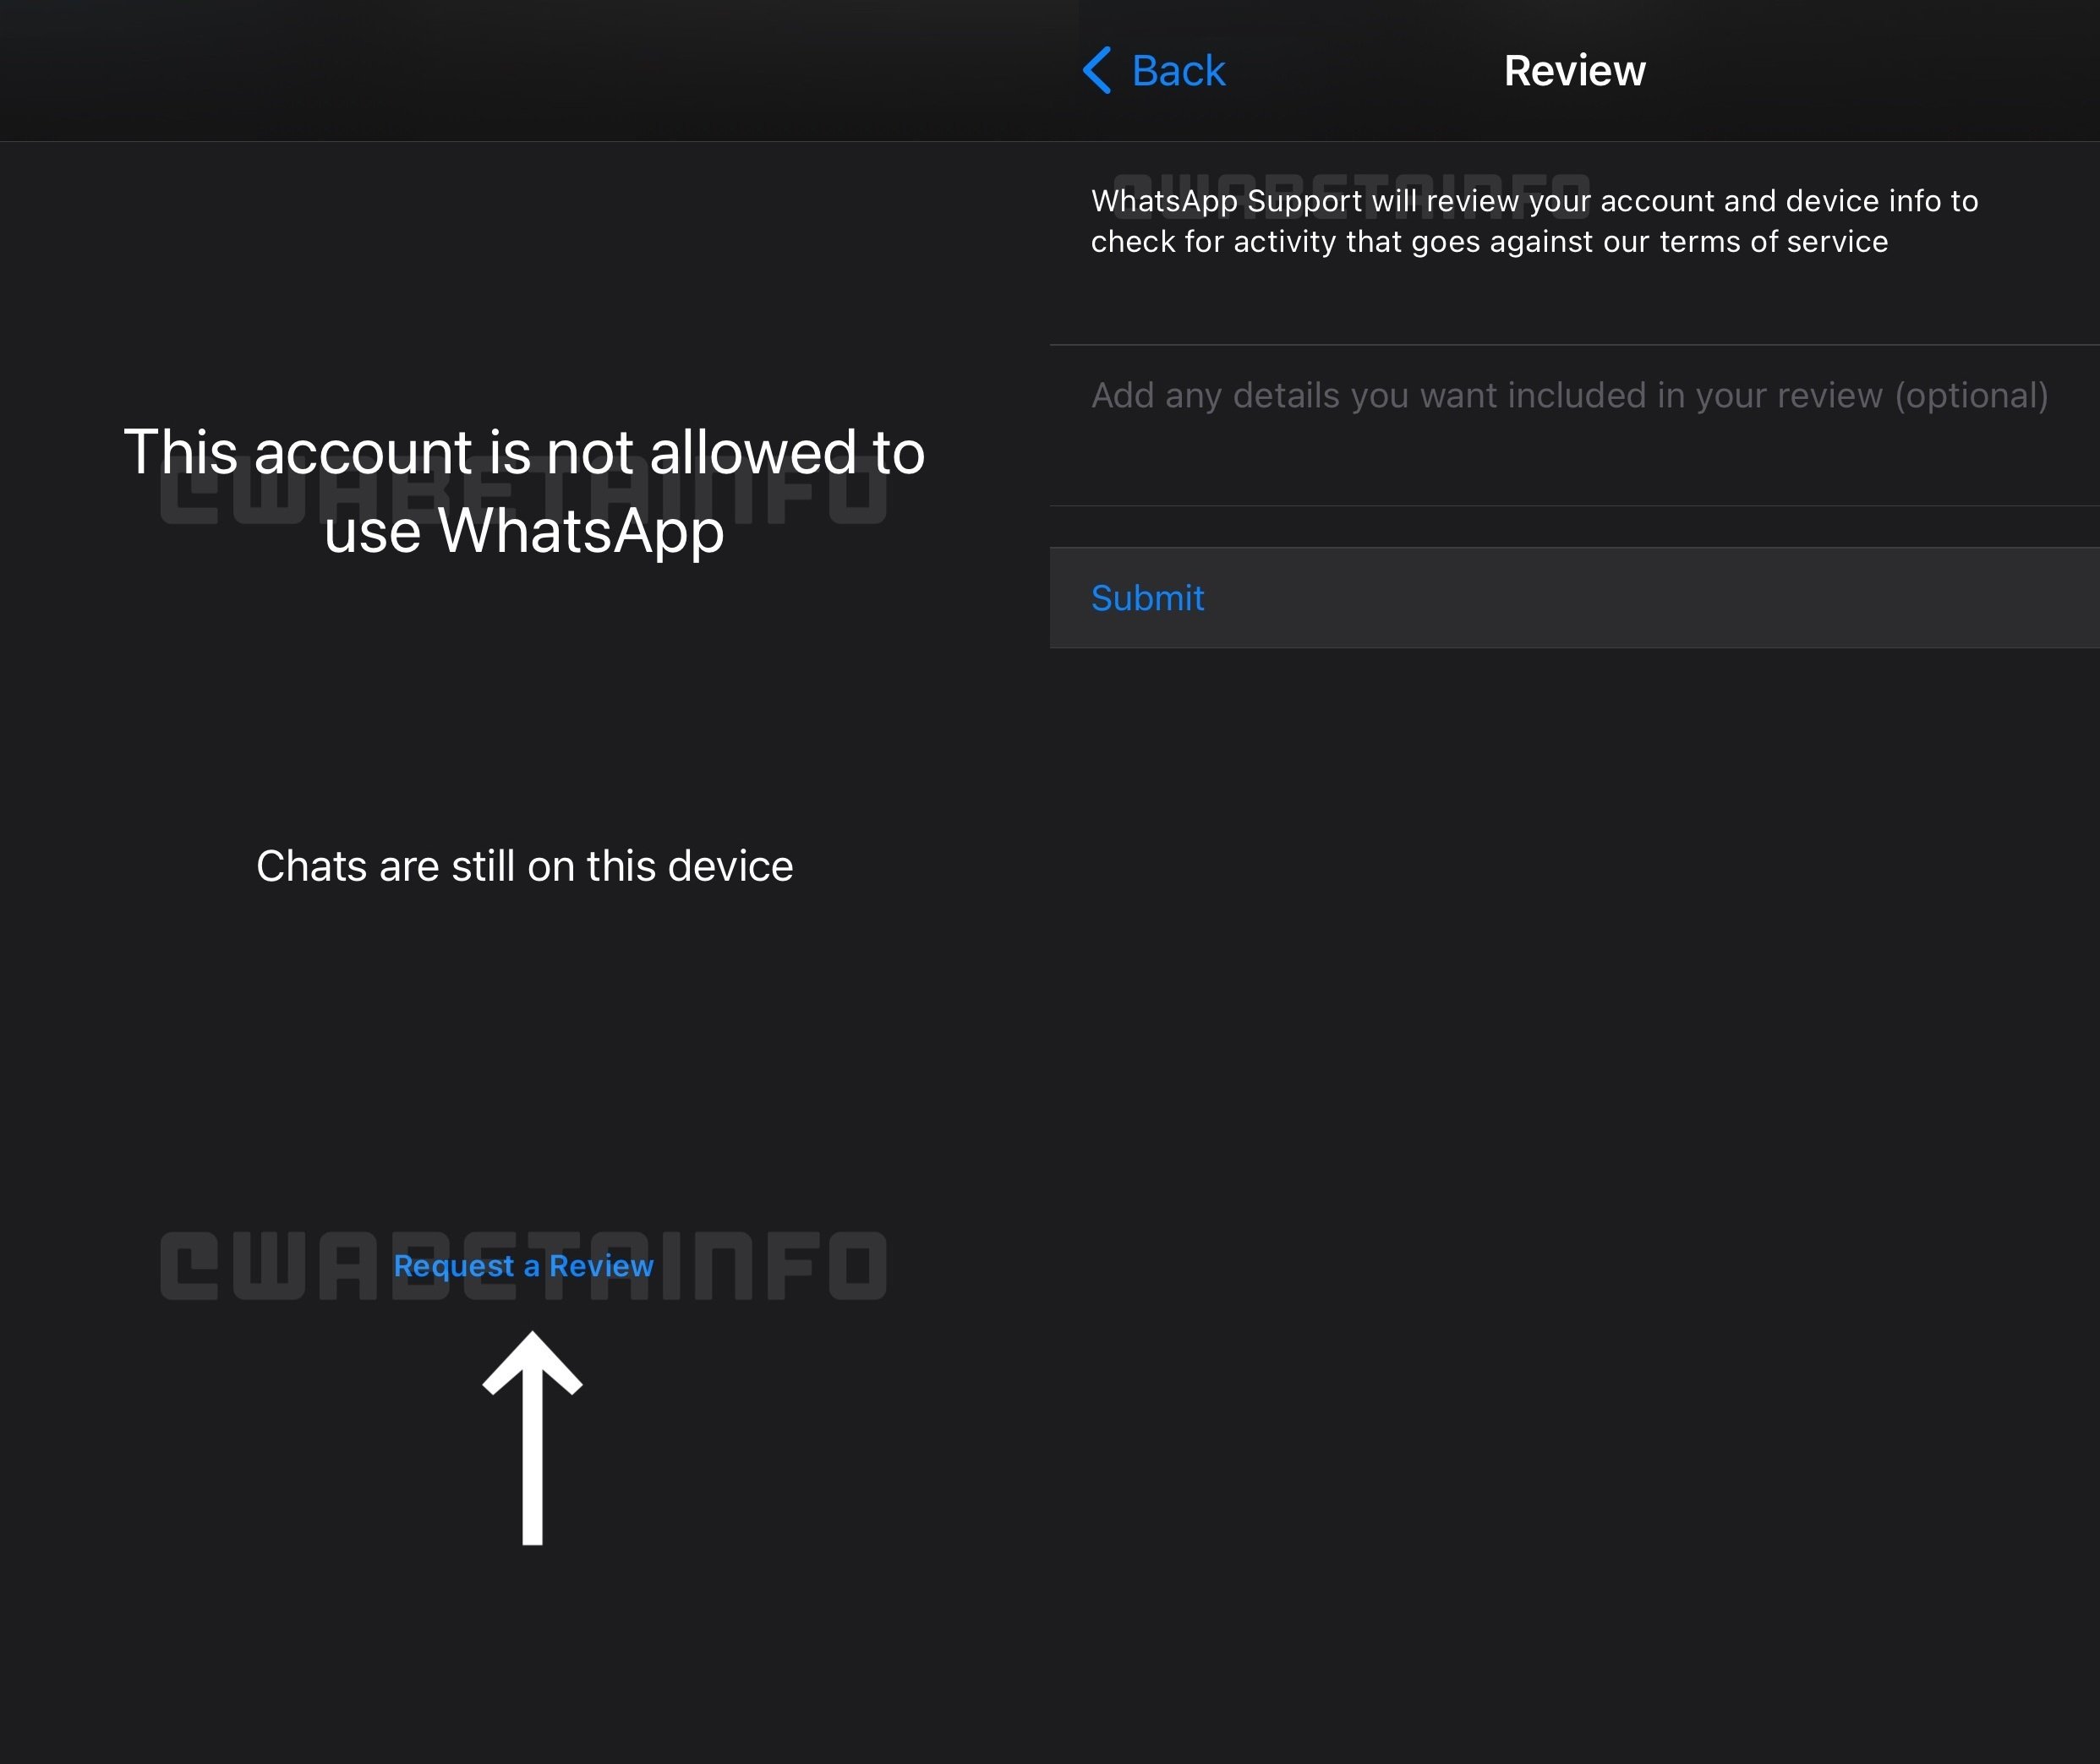 Novo recurso do WhatsApp vai permitir a revisão de contas banidas de forma injusta. (Fonte: WABetaInfo/Reprodução)